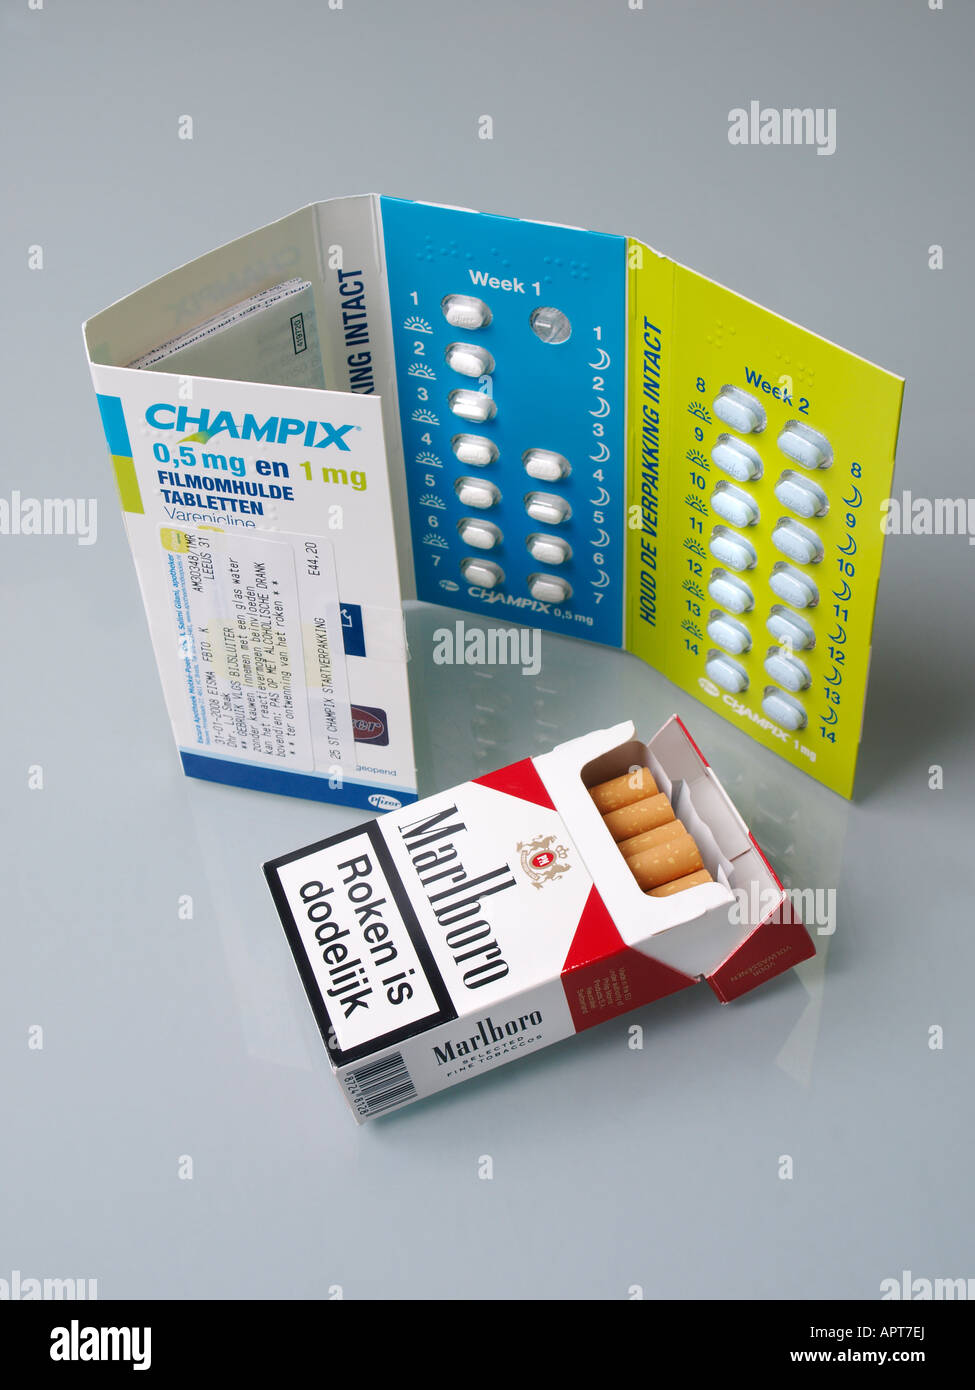 Champix Pfizer ein neues Medikament Medikament zu beendigen Rauchen Aufhören  mit einer Packung Marlboro Zigaretten Stockfotografie - Alamy